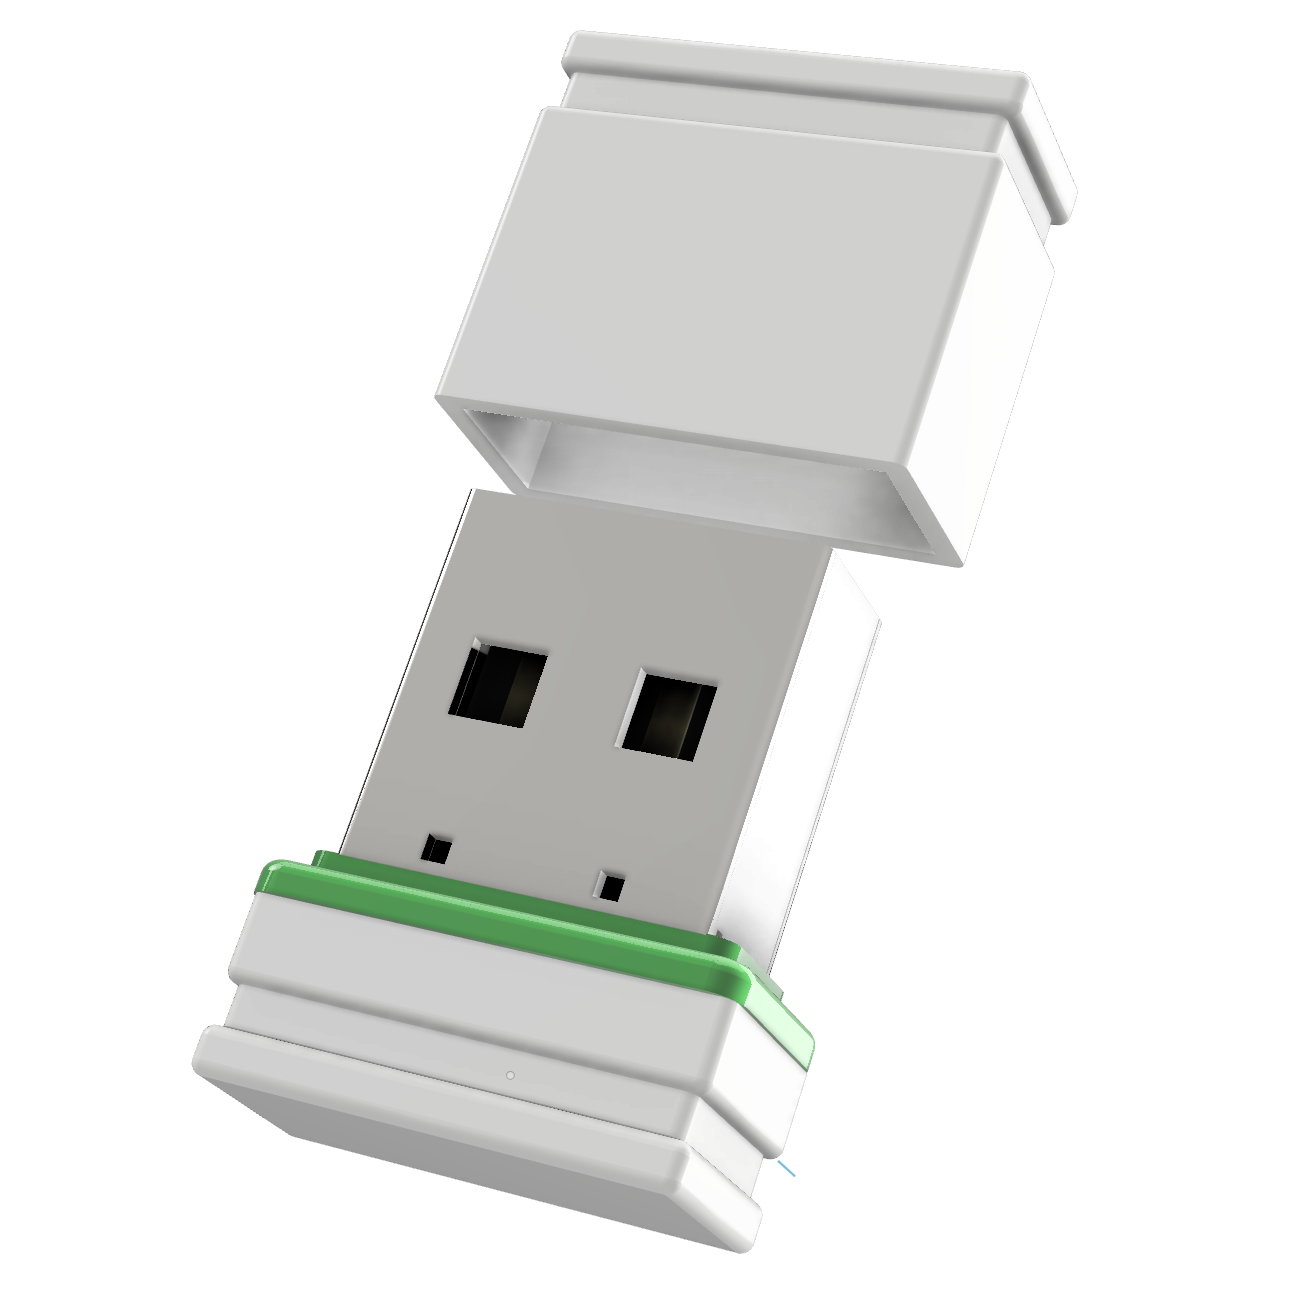 Mini P1 (Weiss/Grün, GB) USB USB-Stick GERMANY 4 ®ULTRA